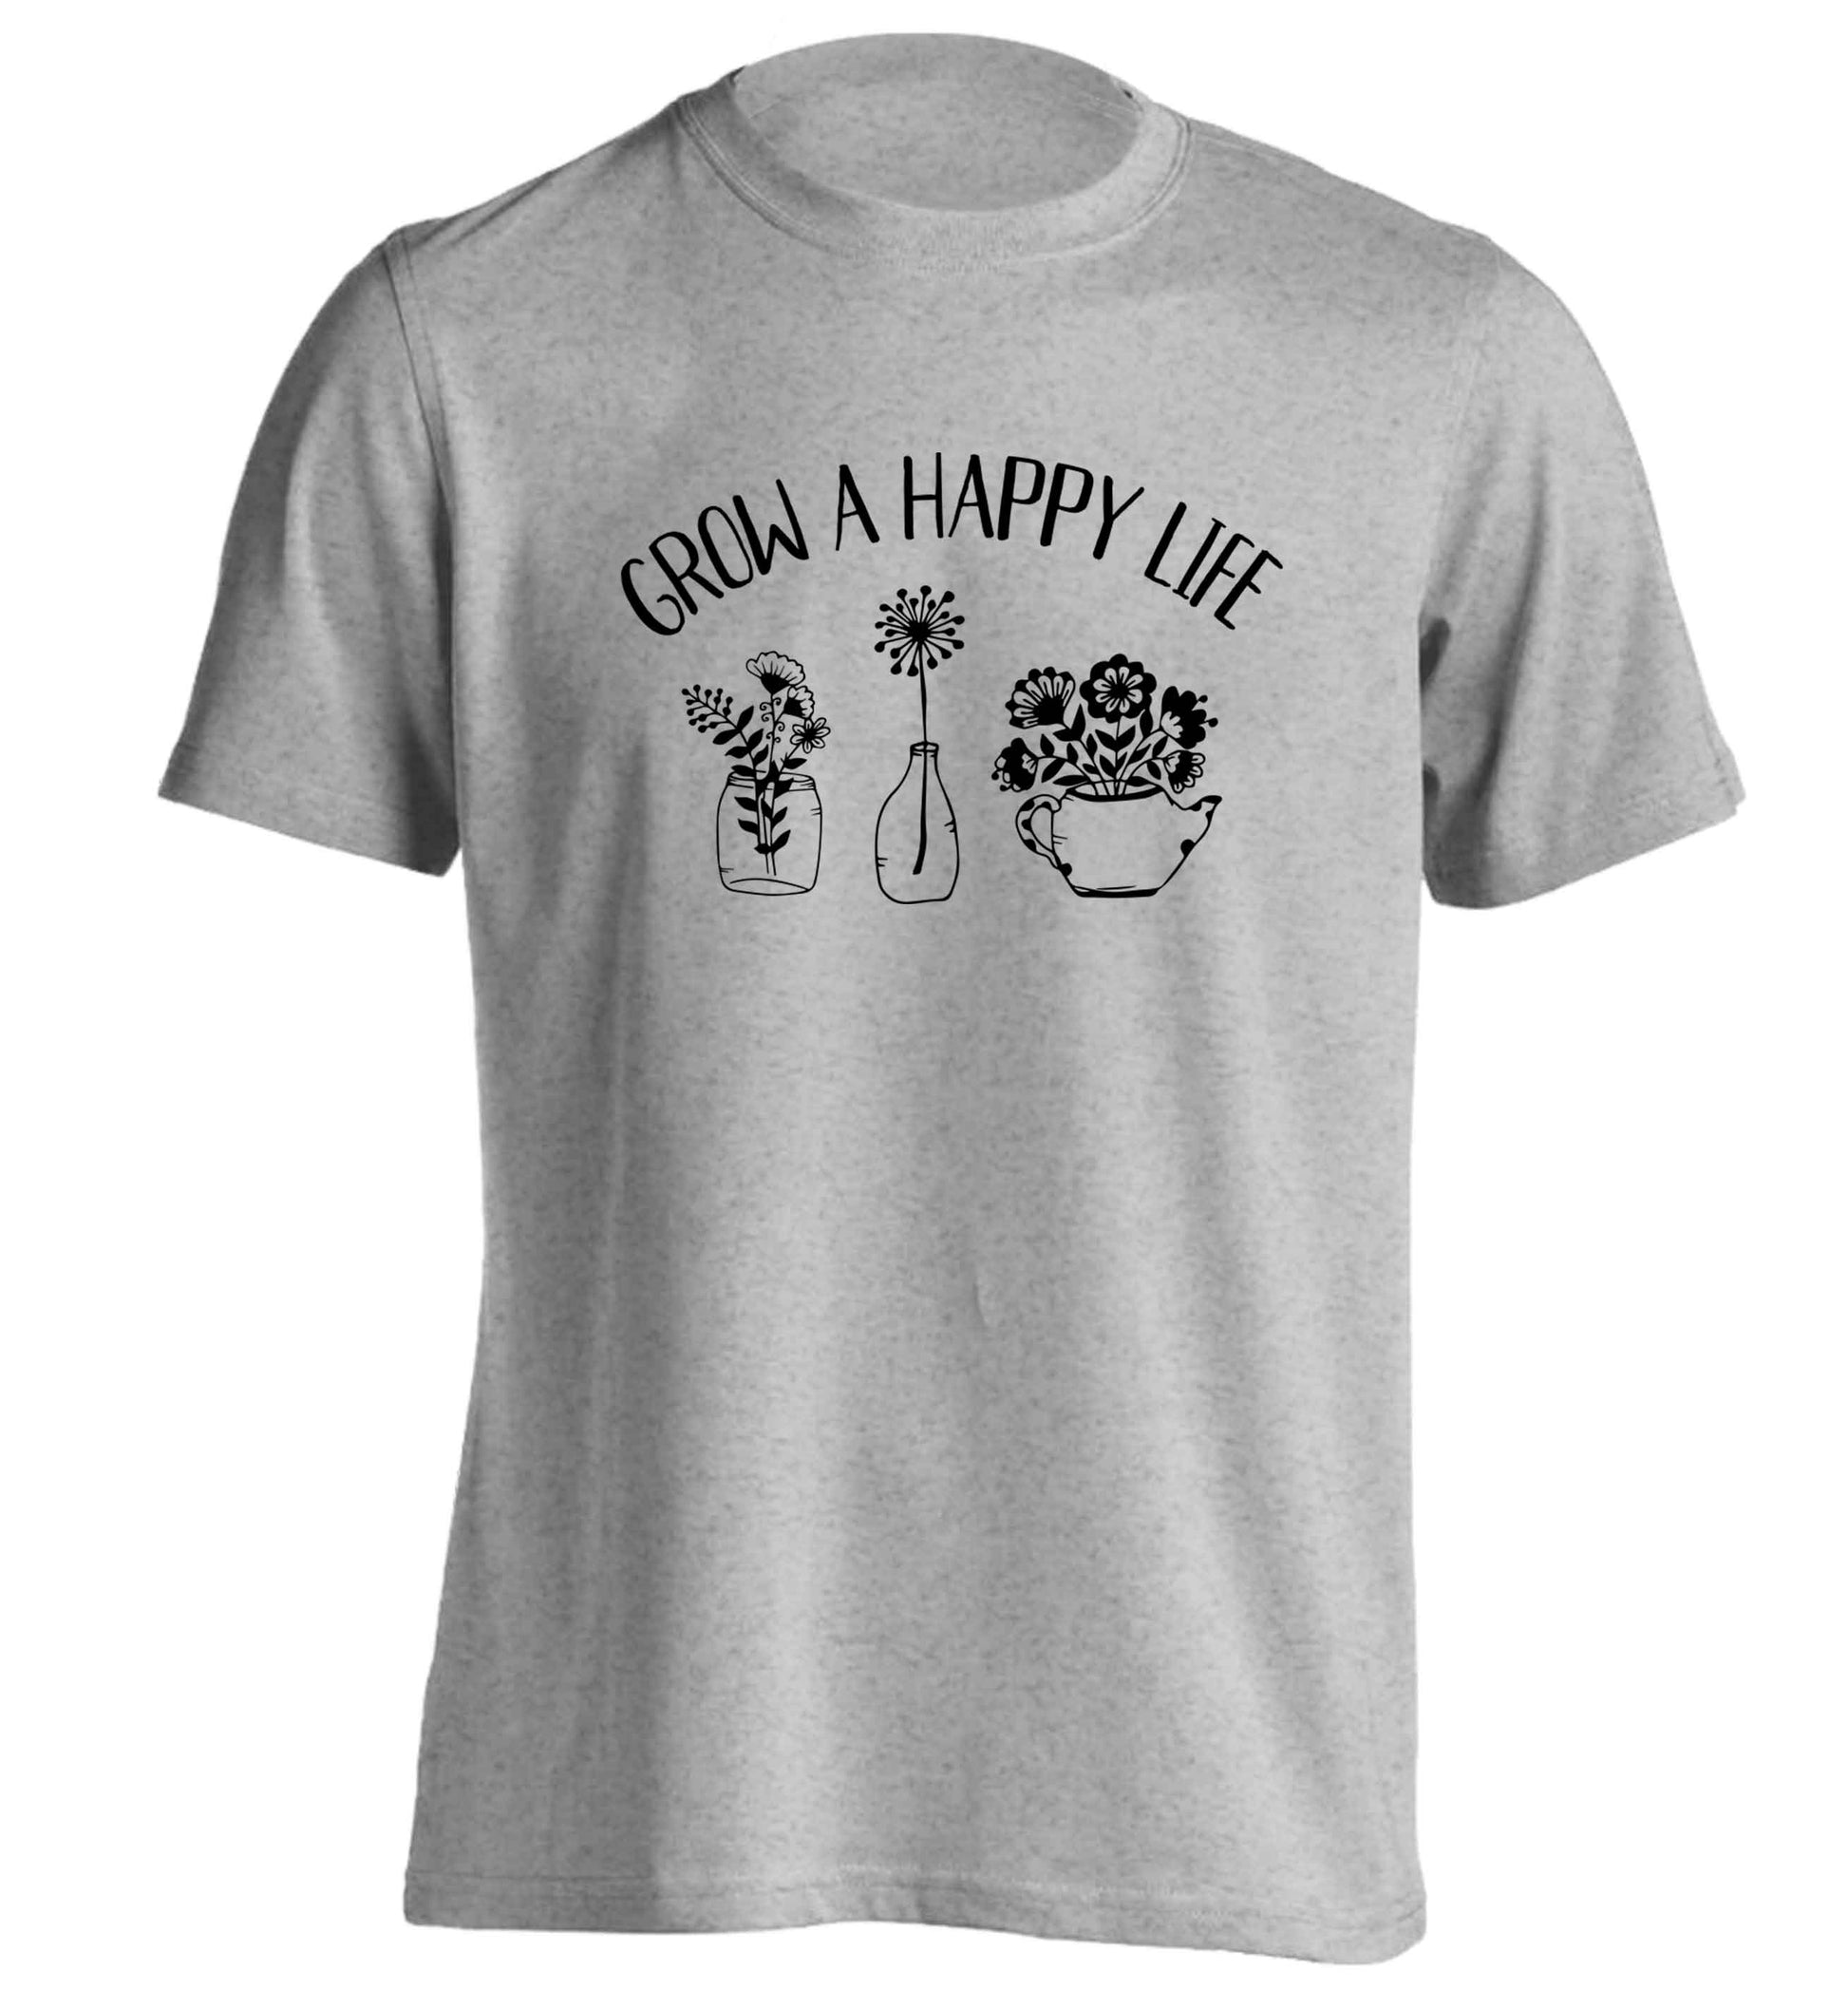 Grow a happy life adults unisex grey Tshirt 2XL